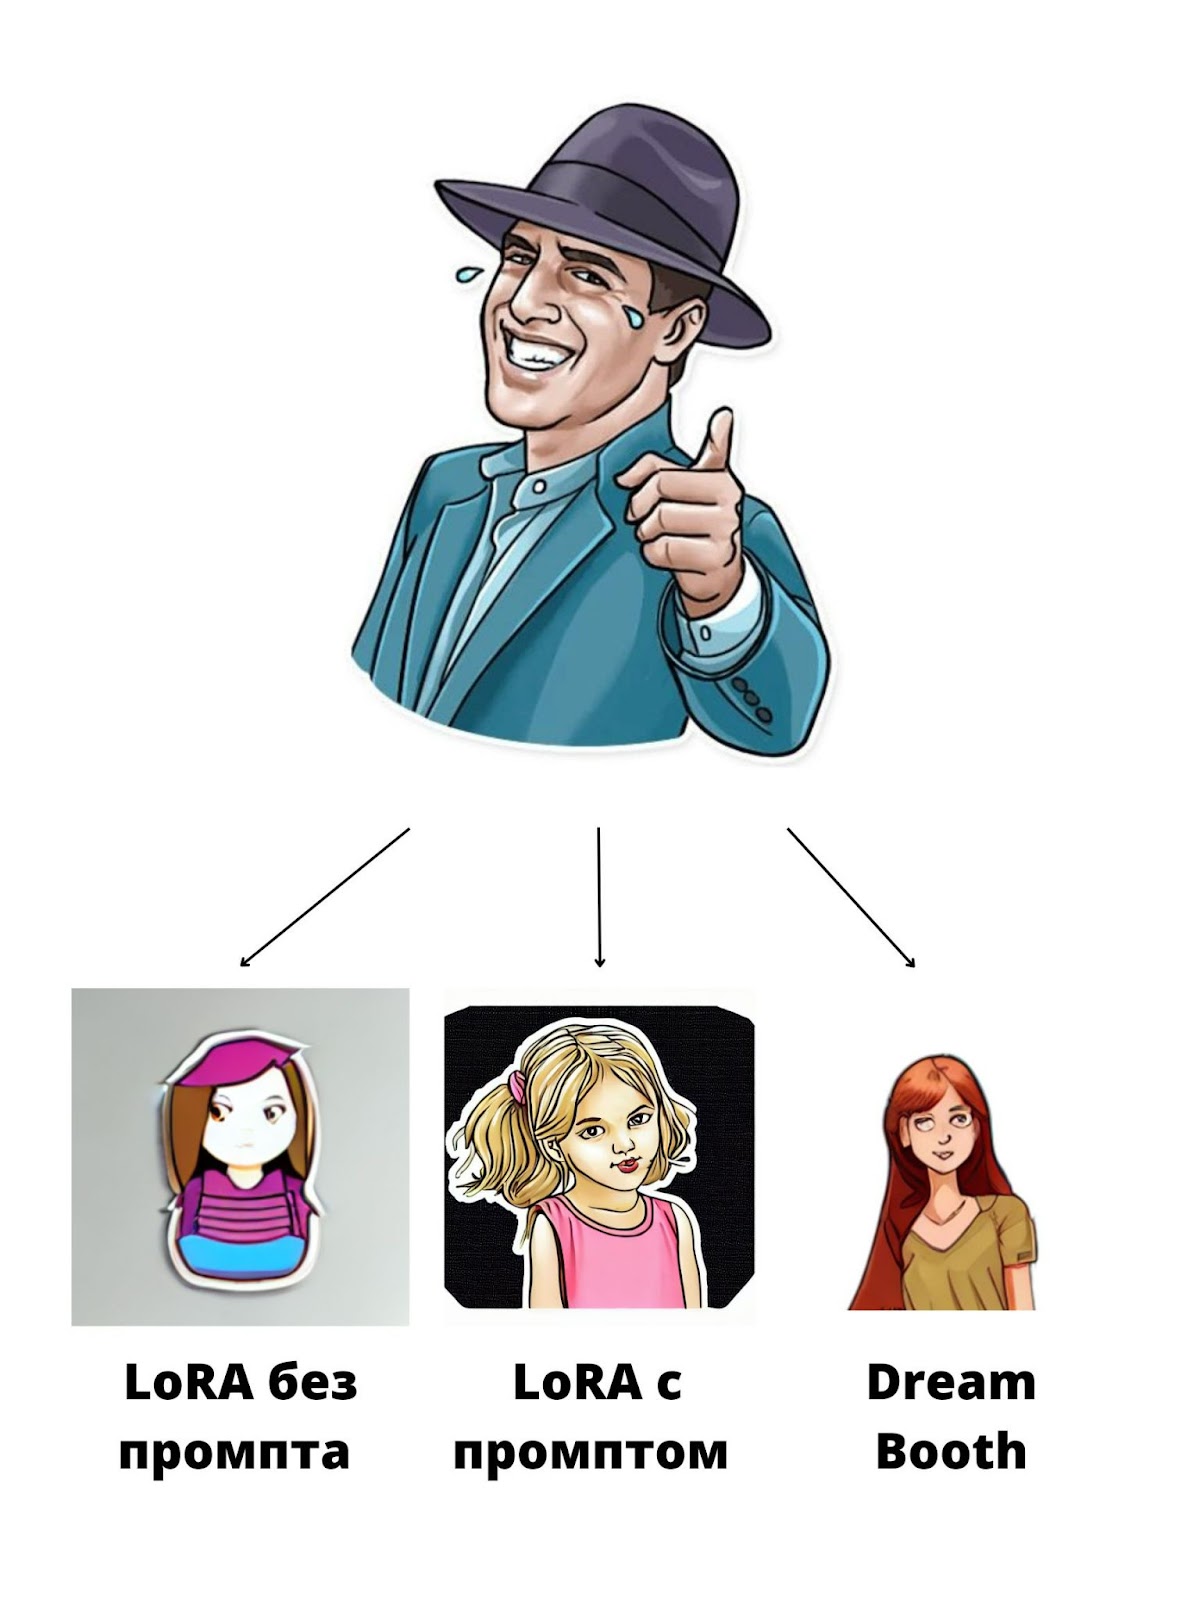 Сравнение LoRA и DreamBooth.